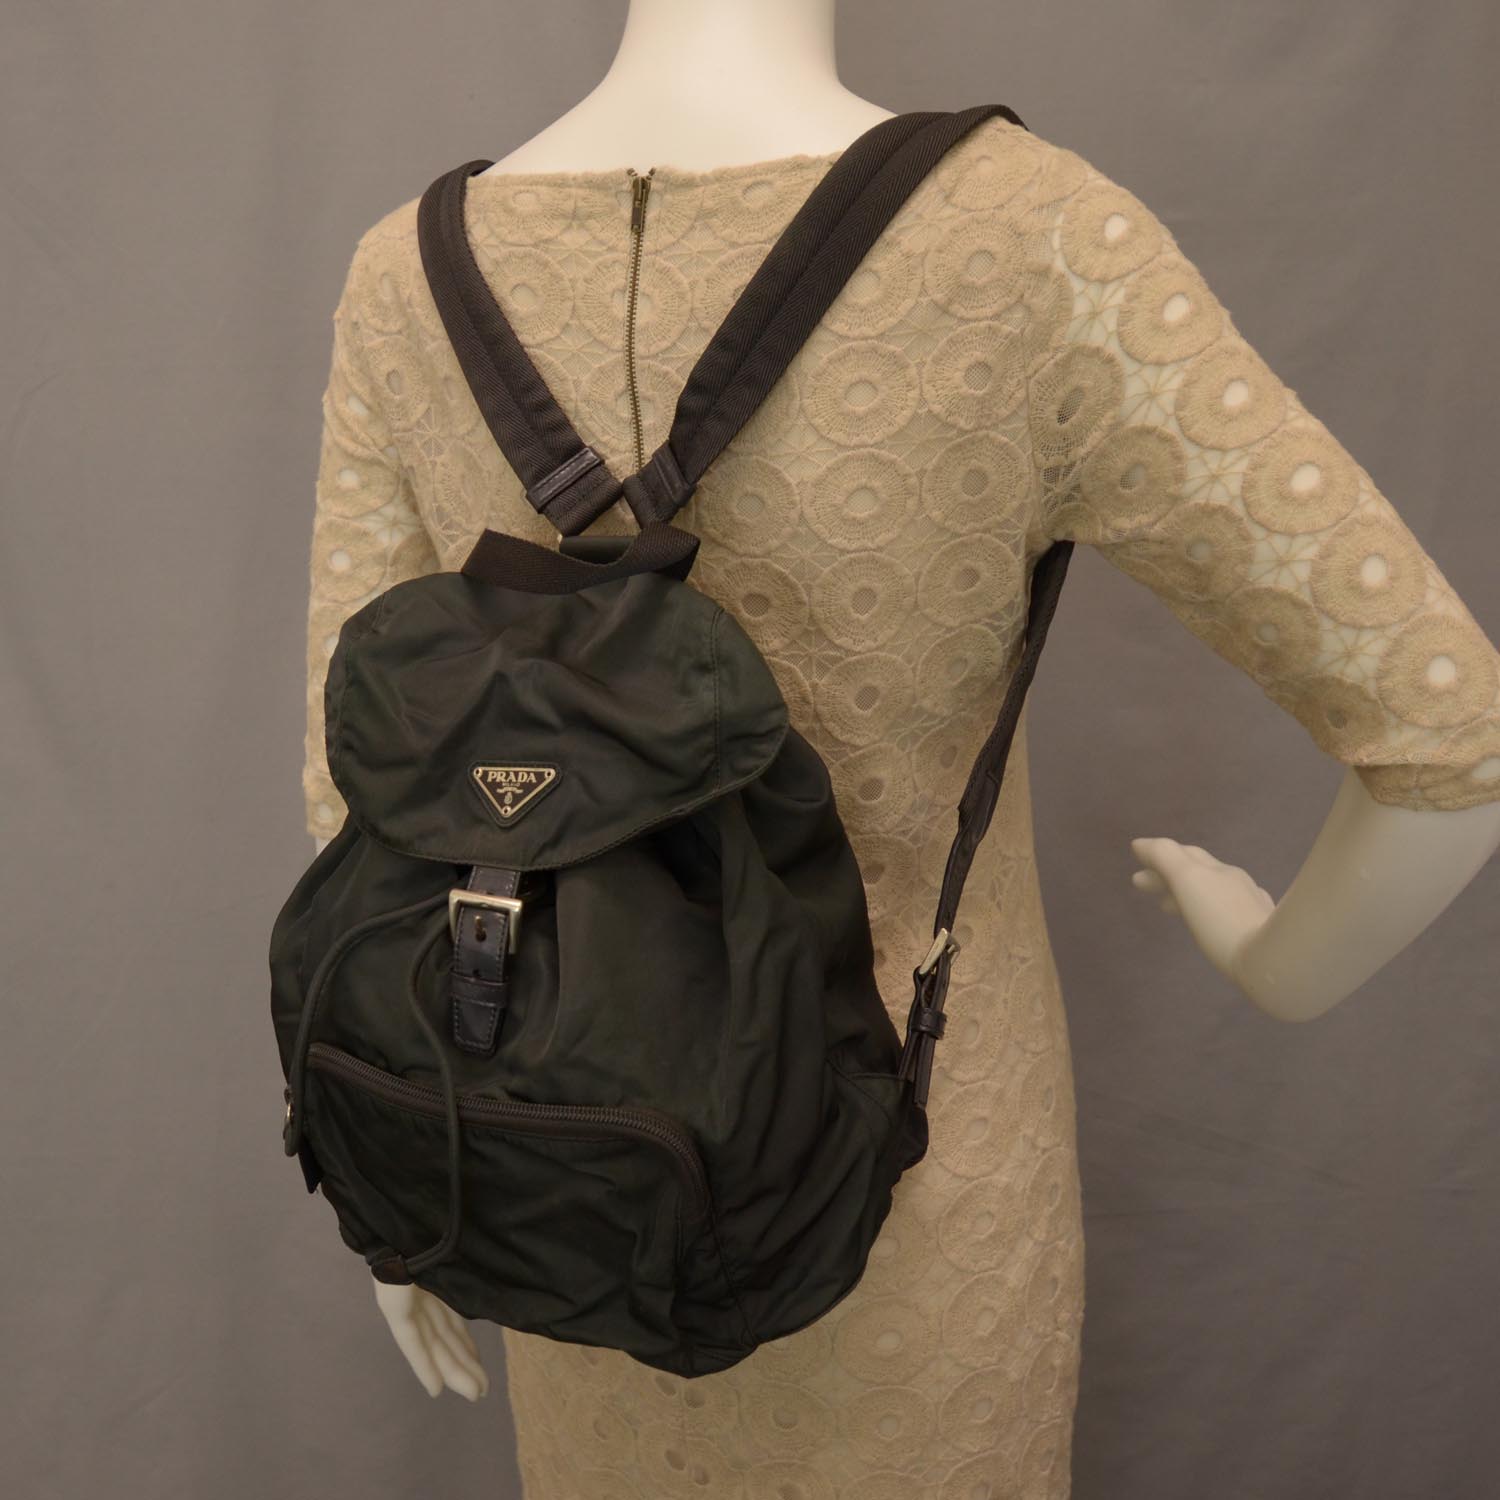 prada backpack tessuto, OFF 77%,www 